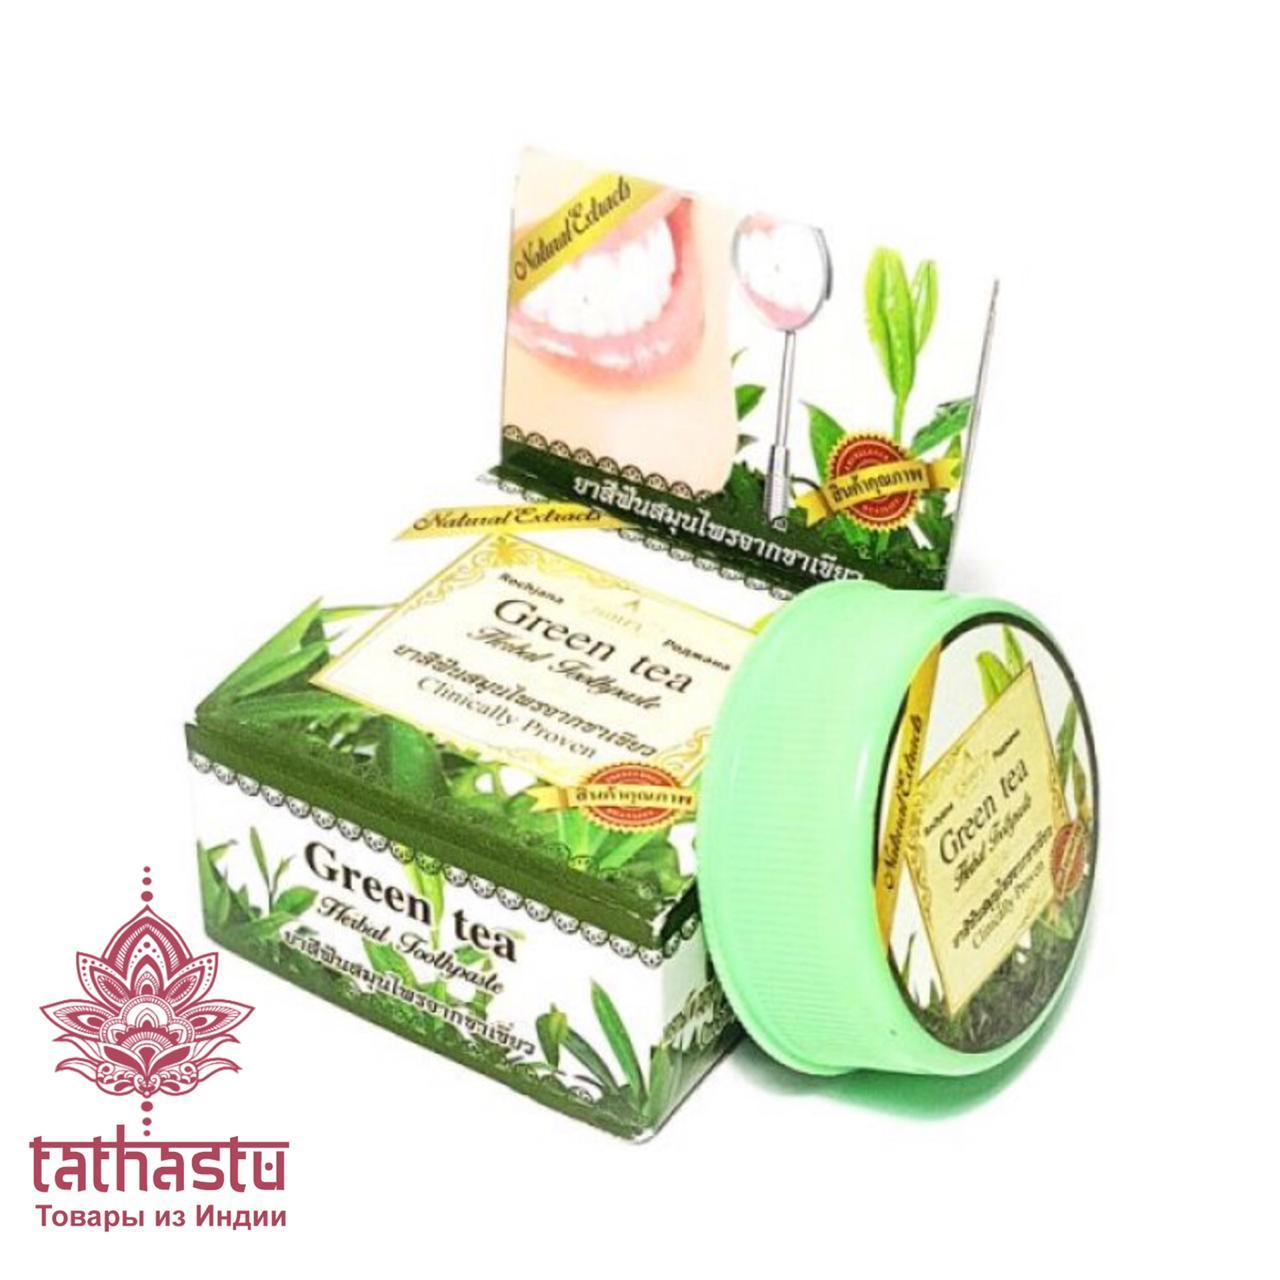 Тайская освежающая антибактериальная зубная паста «Зеленый Чай». Tathastu товары и индии